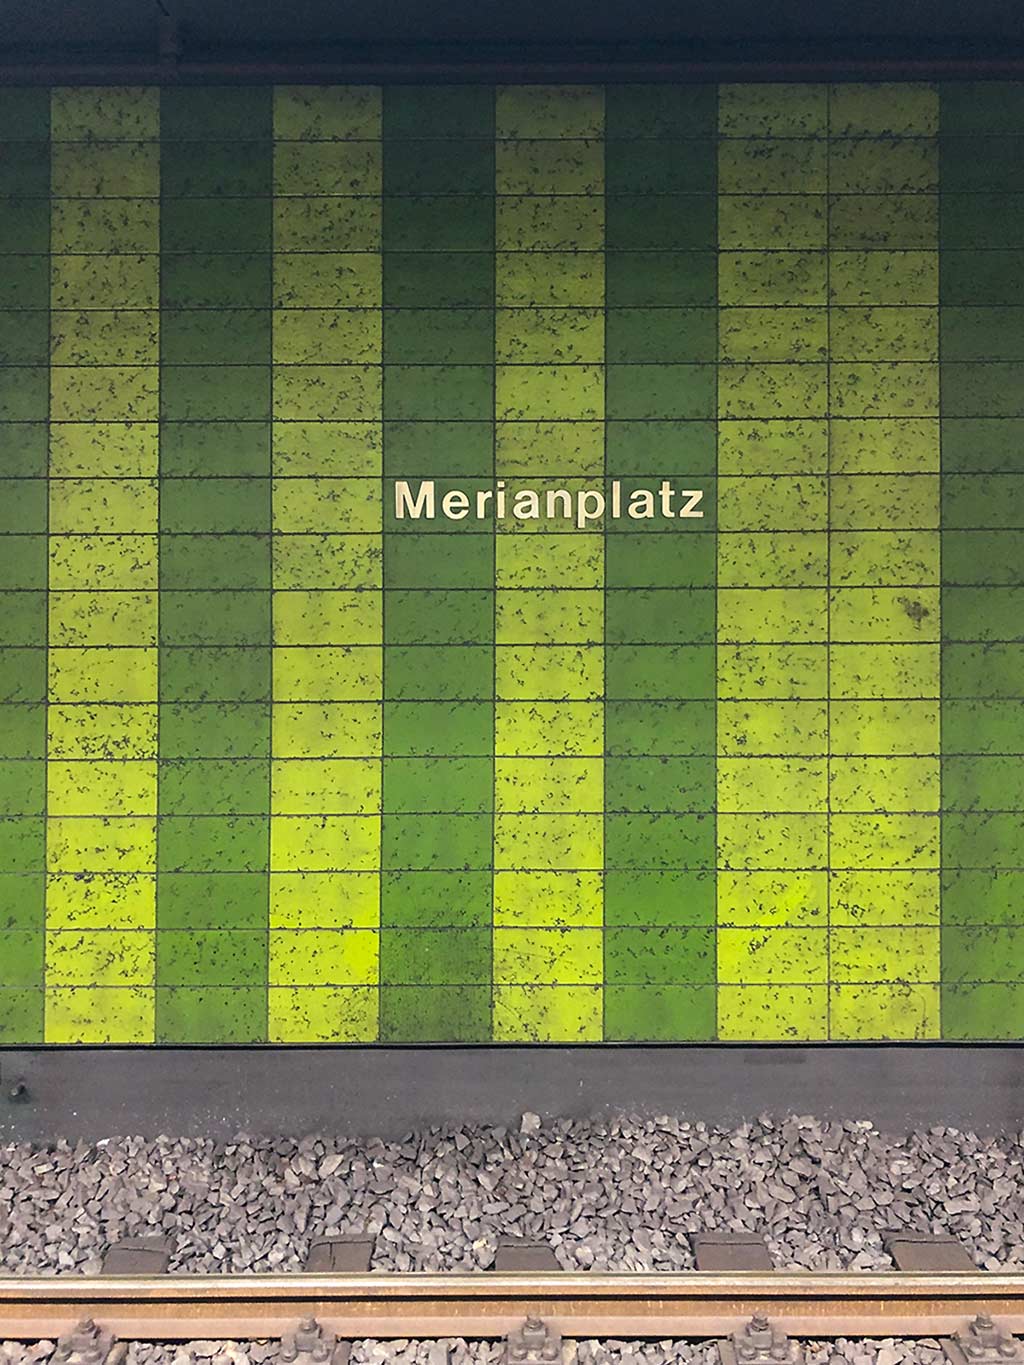 U-Bahn-Station Merianplatz richtig geschrieben